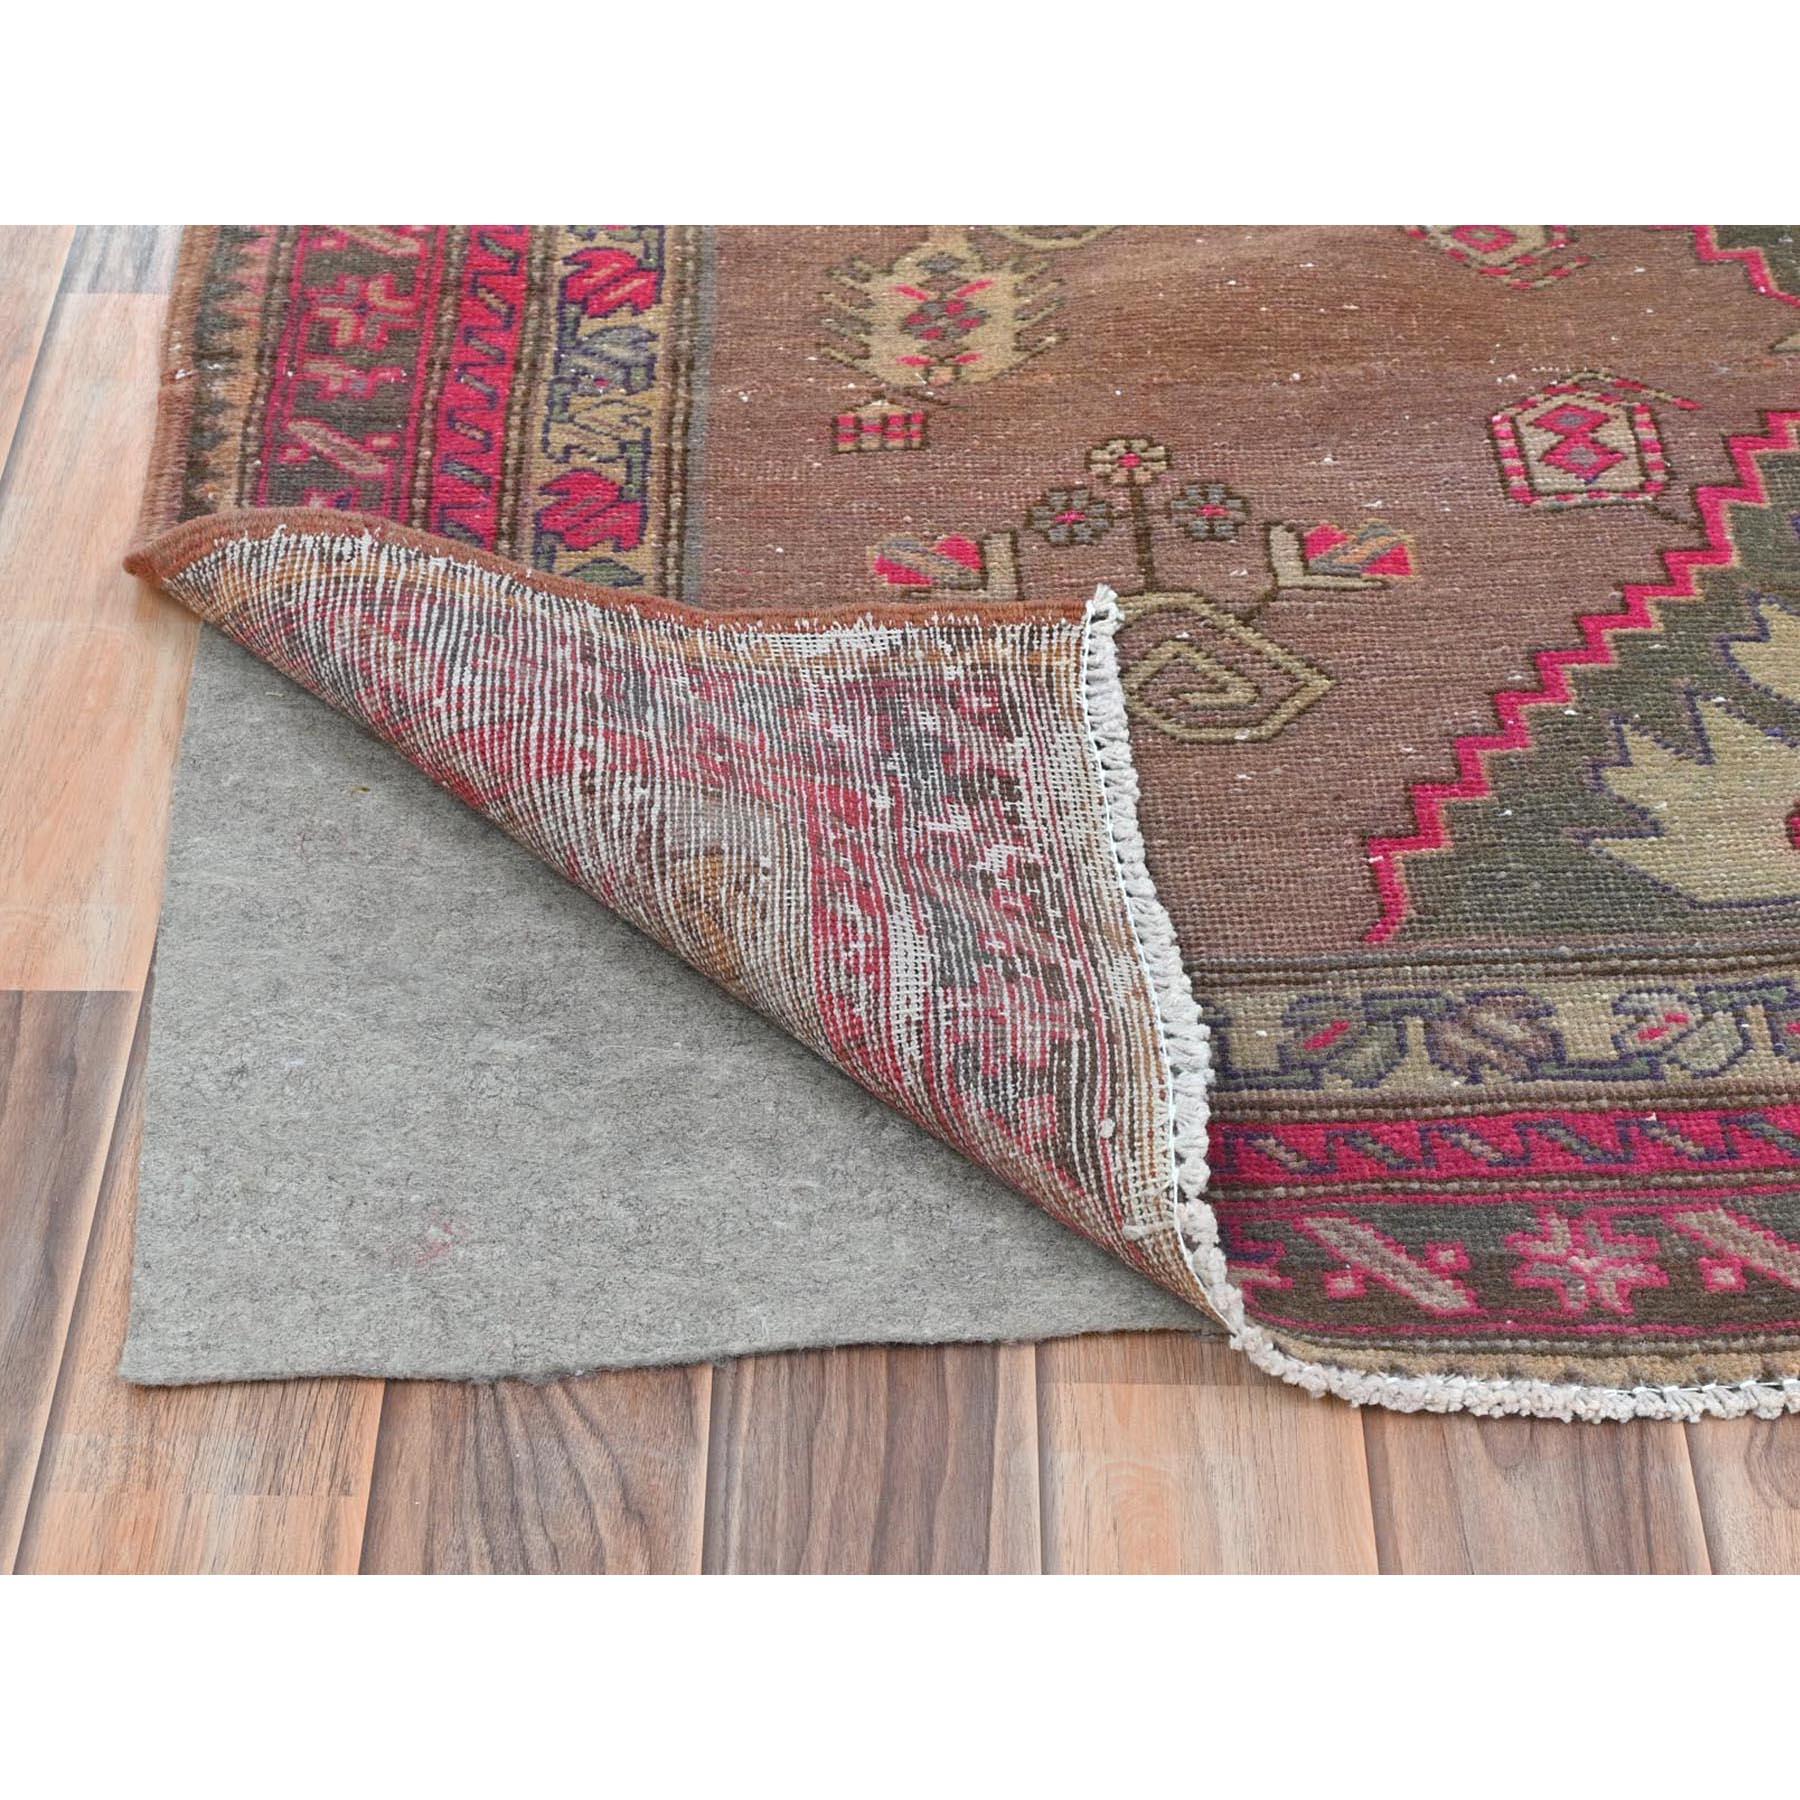 Handgeknüpfter rosafarbener geblümter böhmischer nordwestlicher persischer Abrash-Teppich aus reiner Wolle (Mittelalterlich)